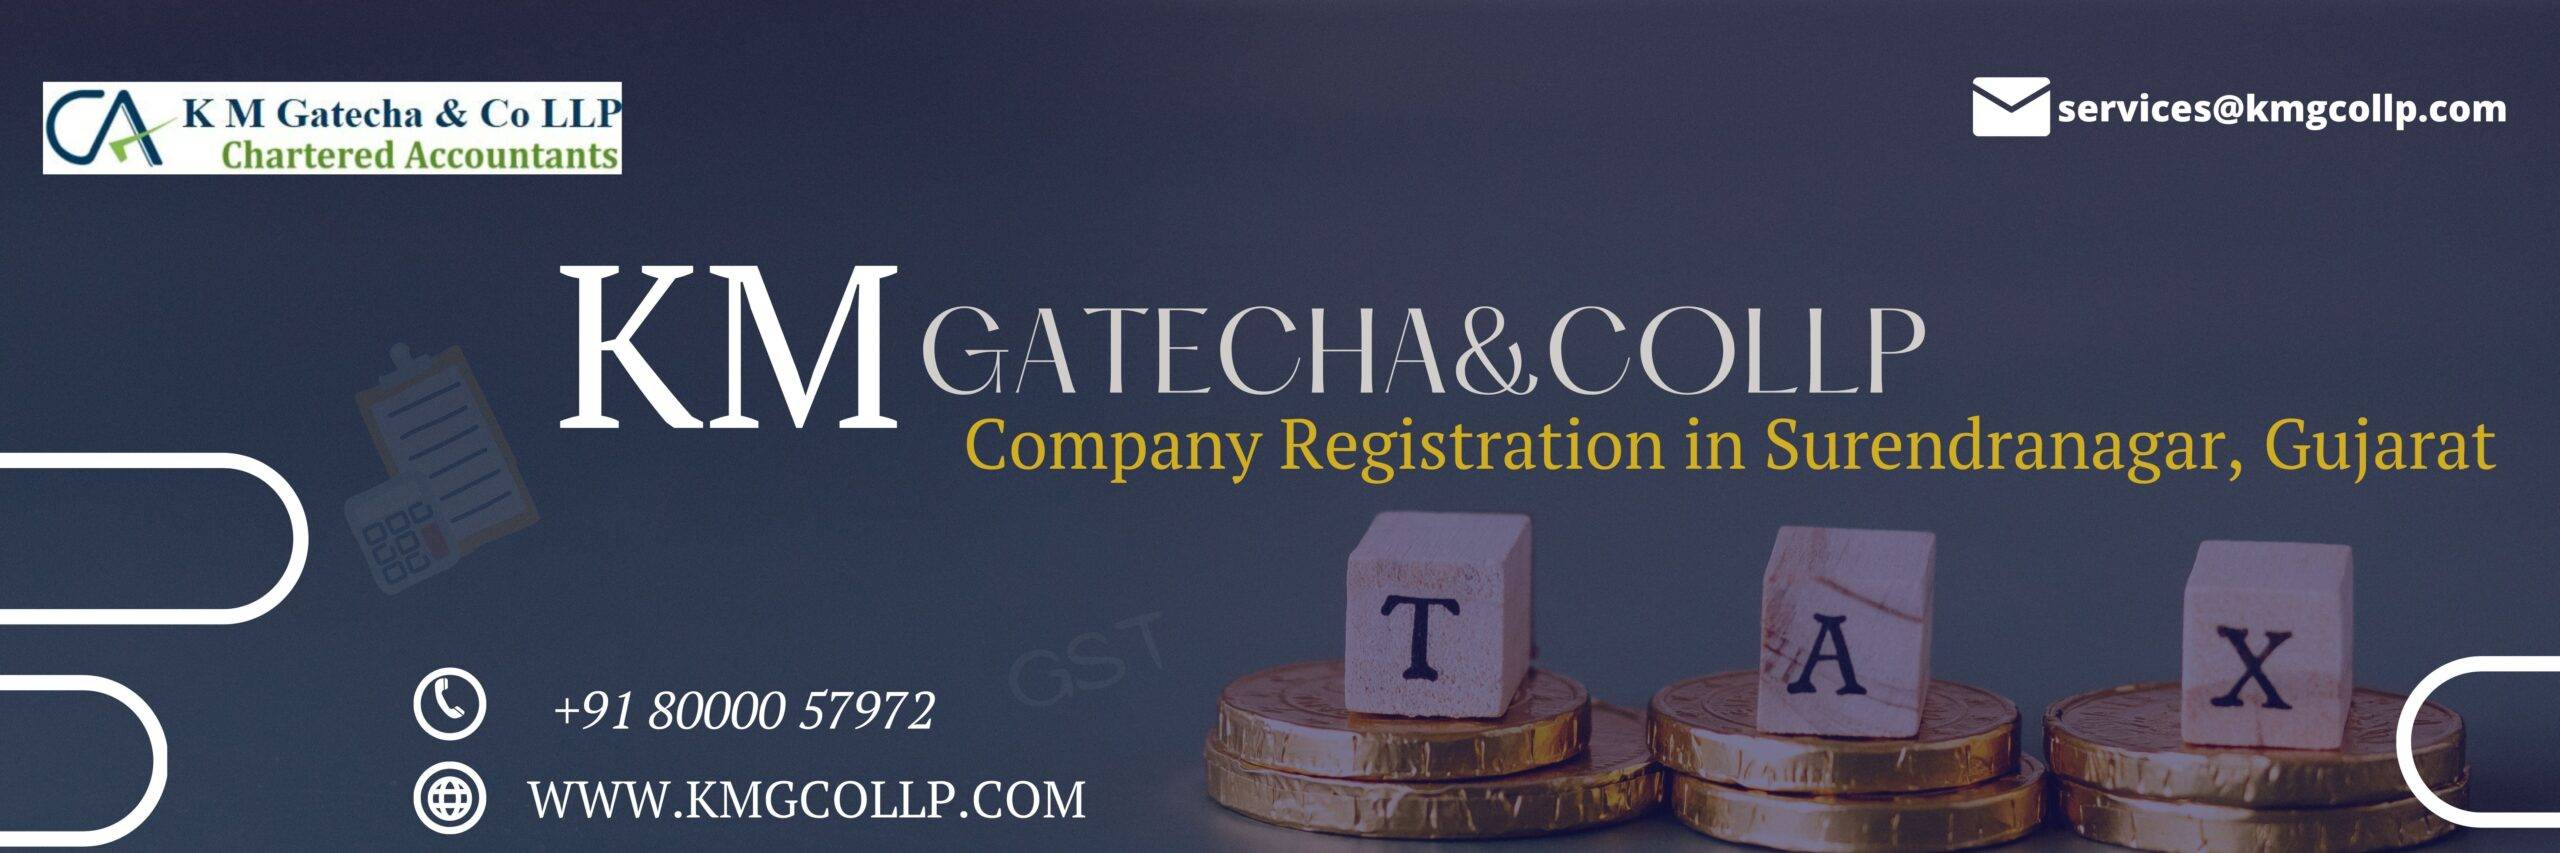 Company Registration in Surendranagar